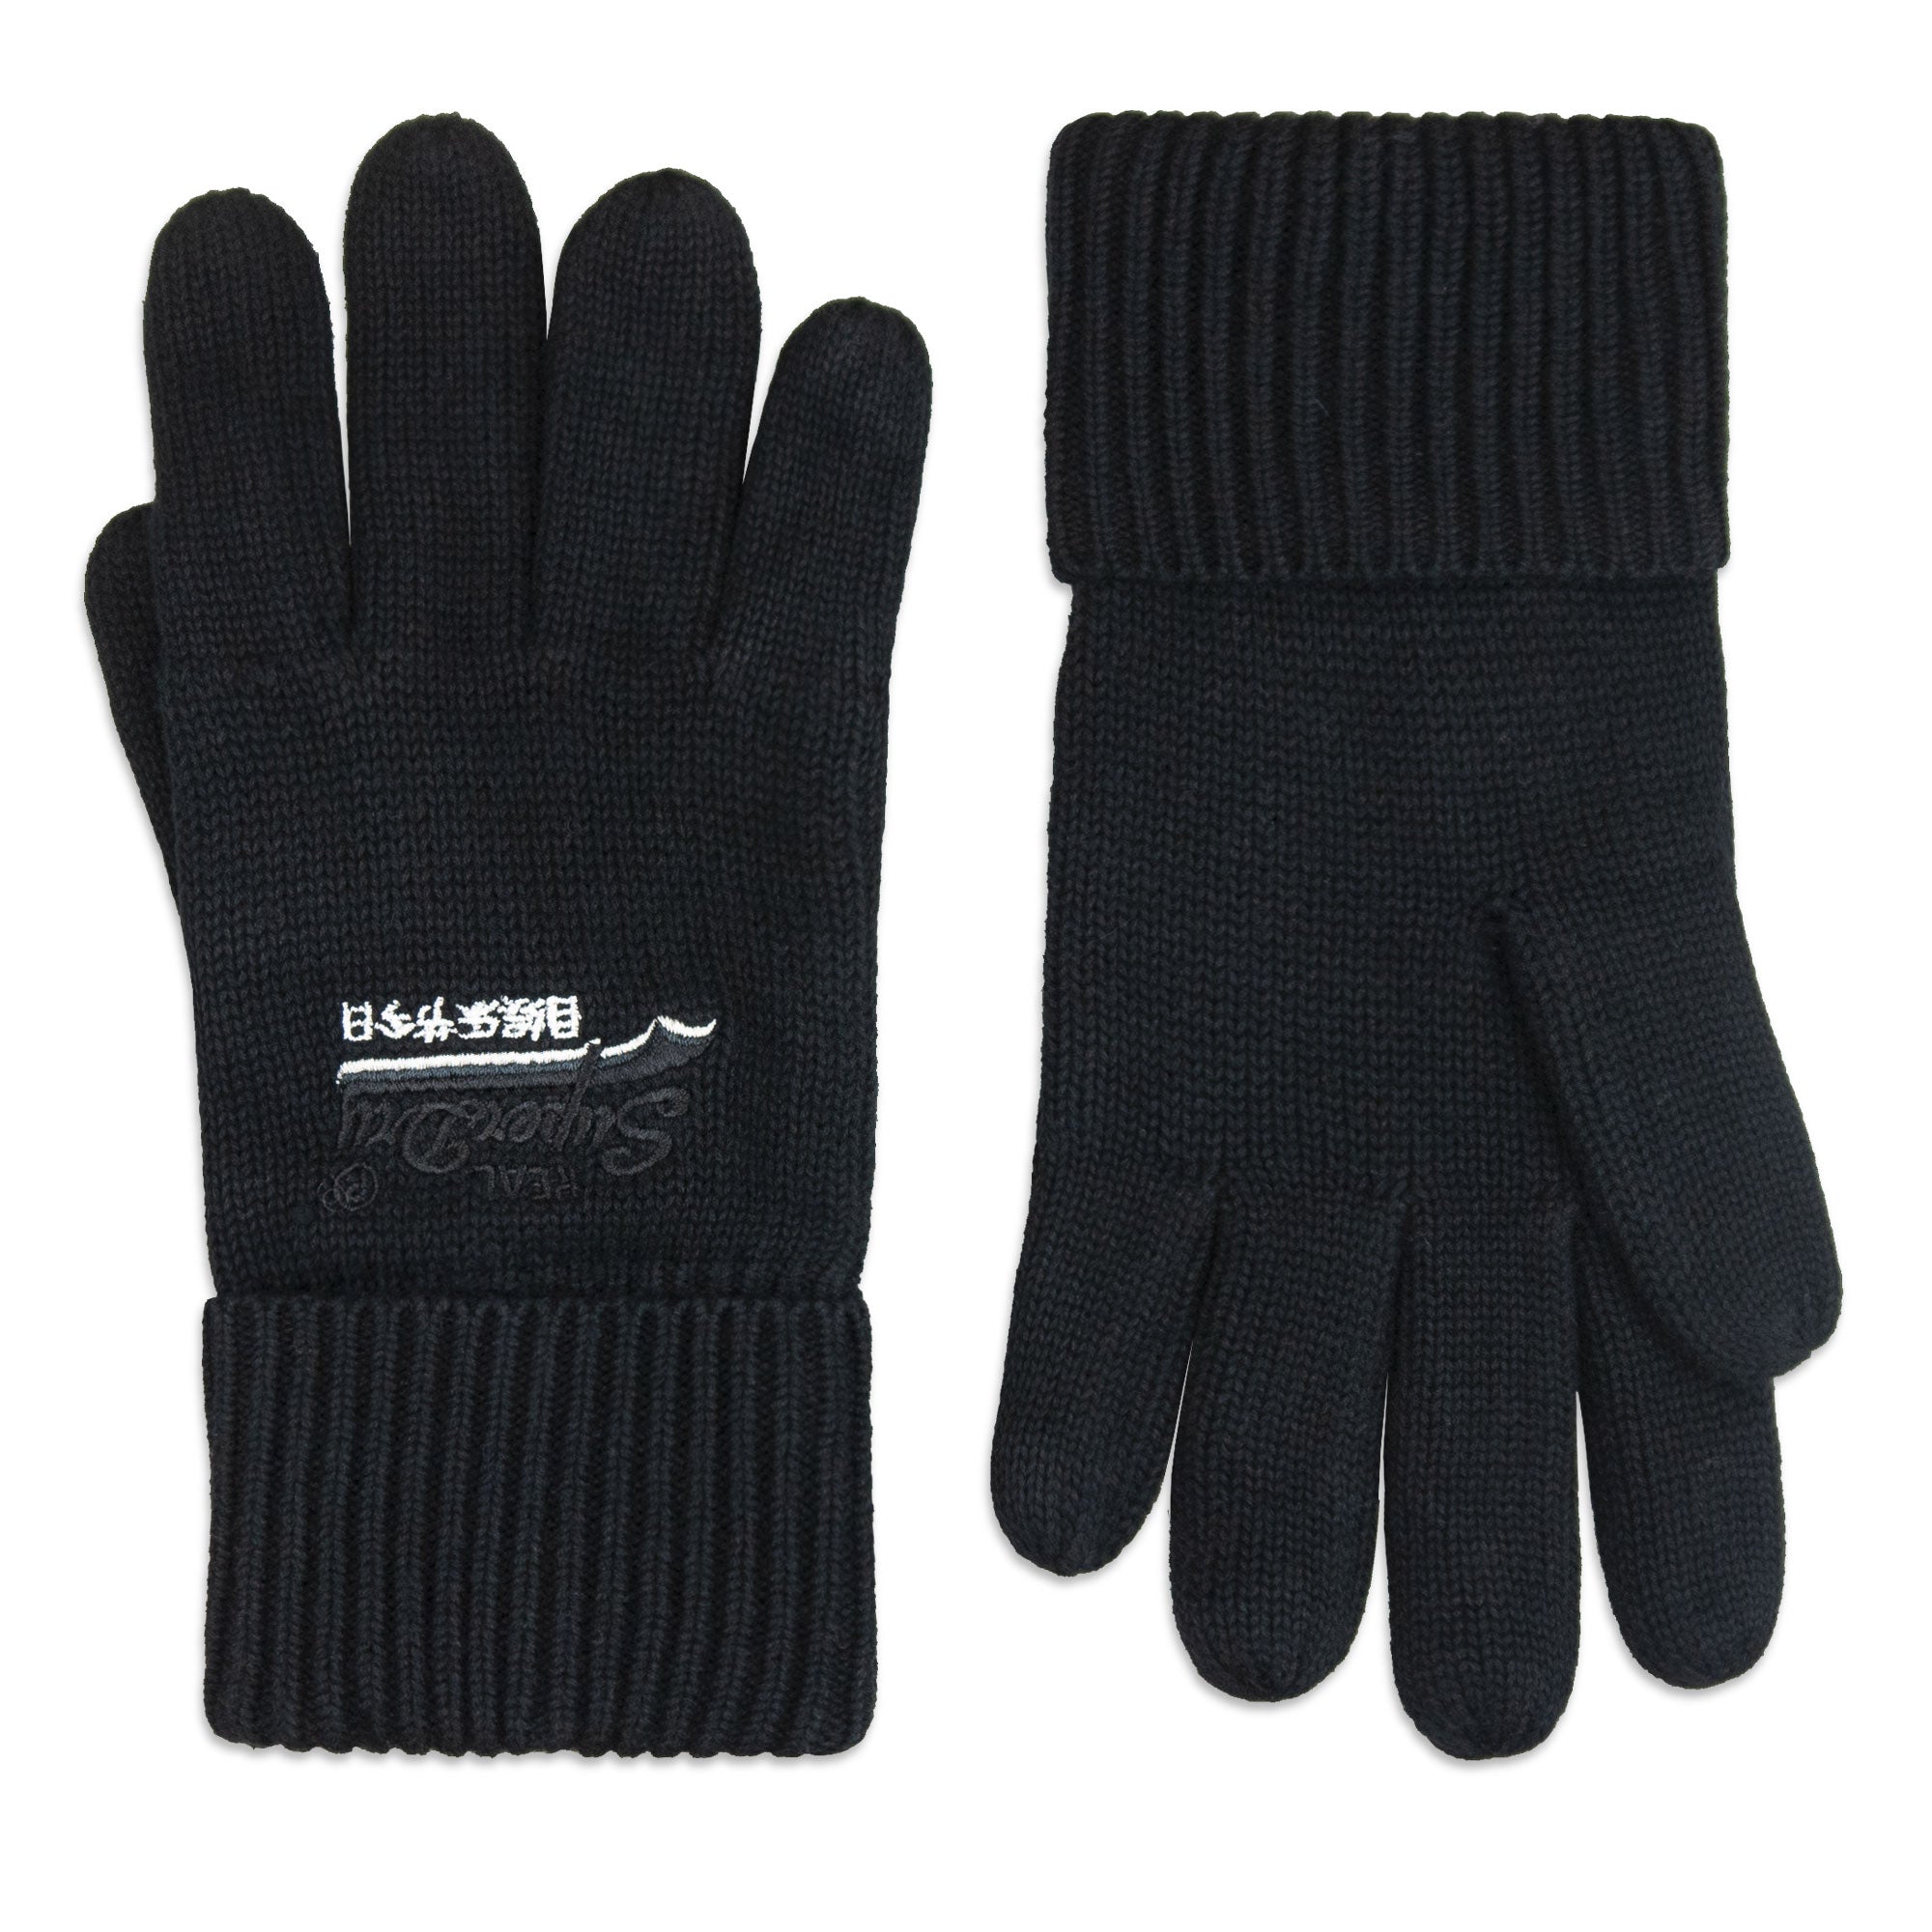 Superdry Orange Label Gloves - Black